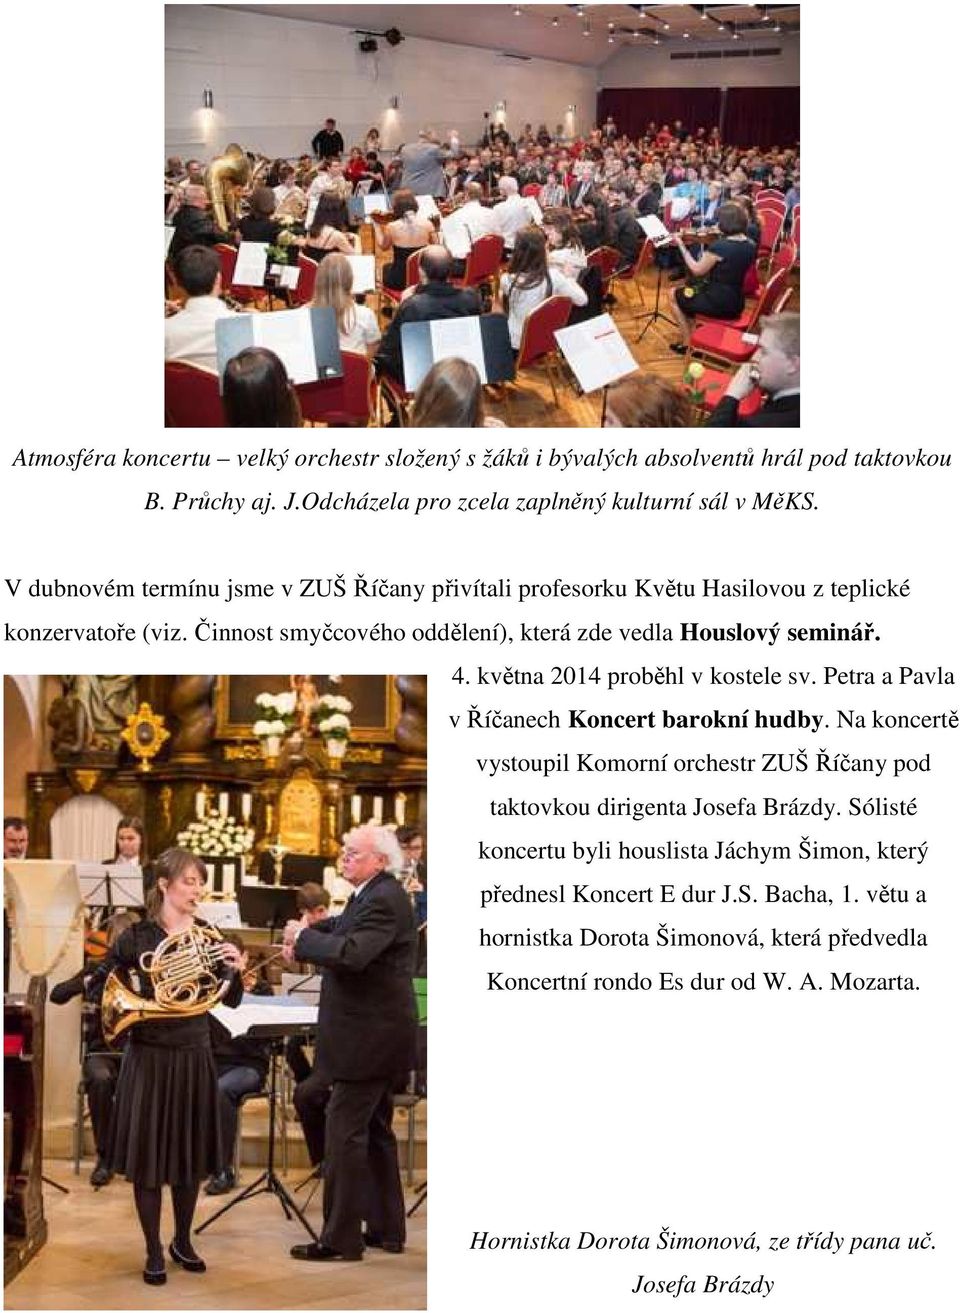 května 2014 proběhl v kostele sv. Petra a Pavla v Říčanech Koncert barokní hudby. Na koncertě vystoupil Komorní orchestr ZUŠ Říčany pod taktovkou dirigenta Josefa Brázdy.